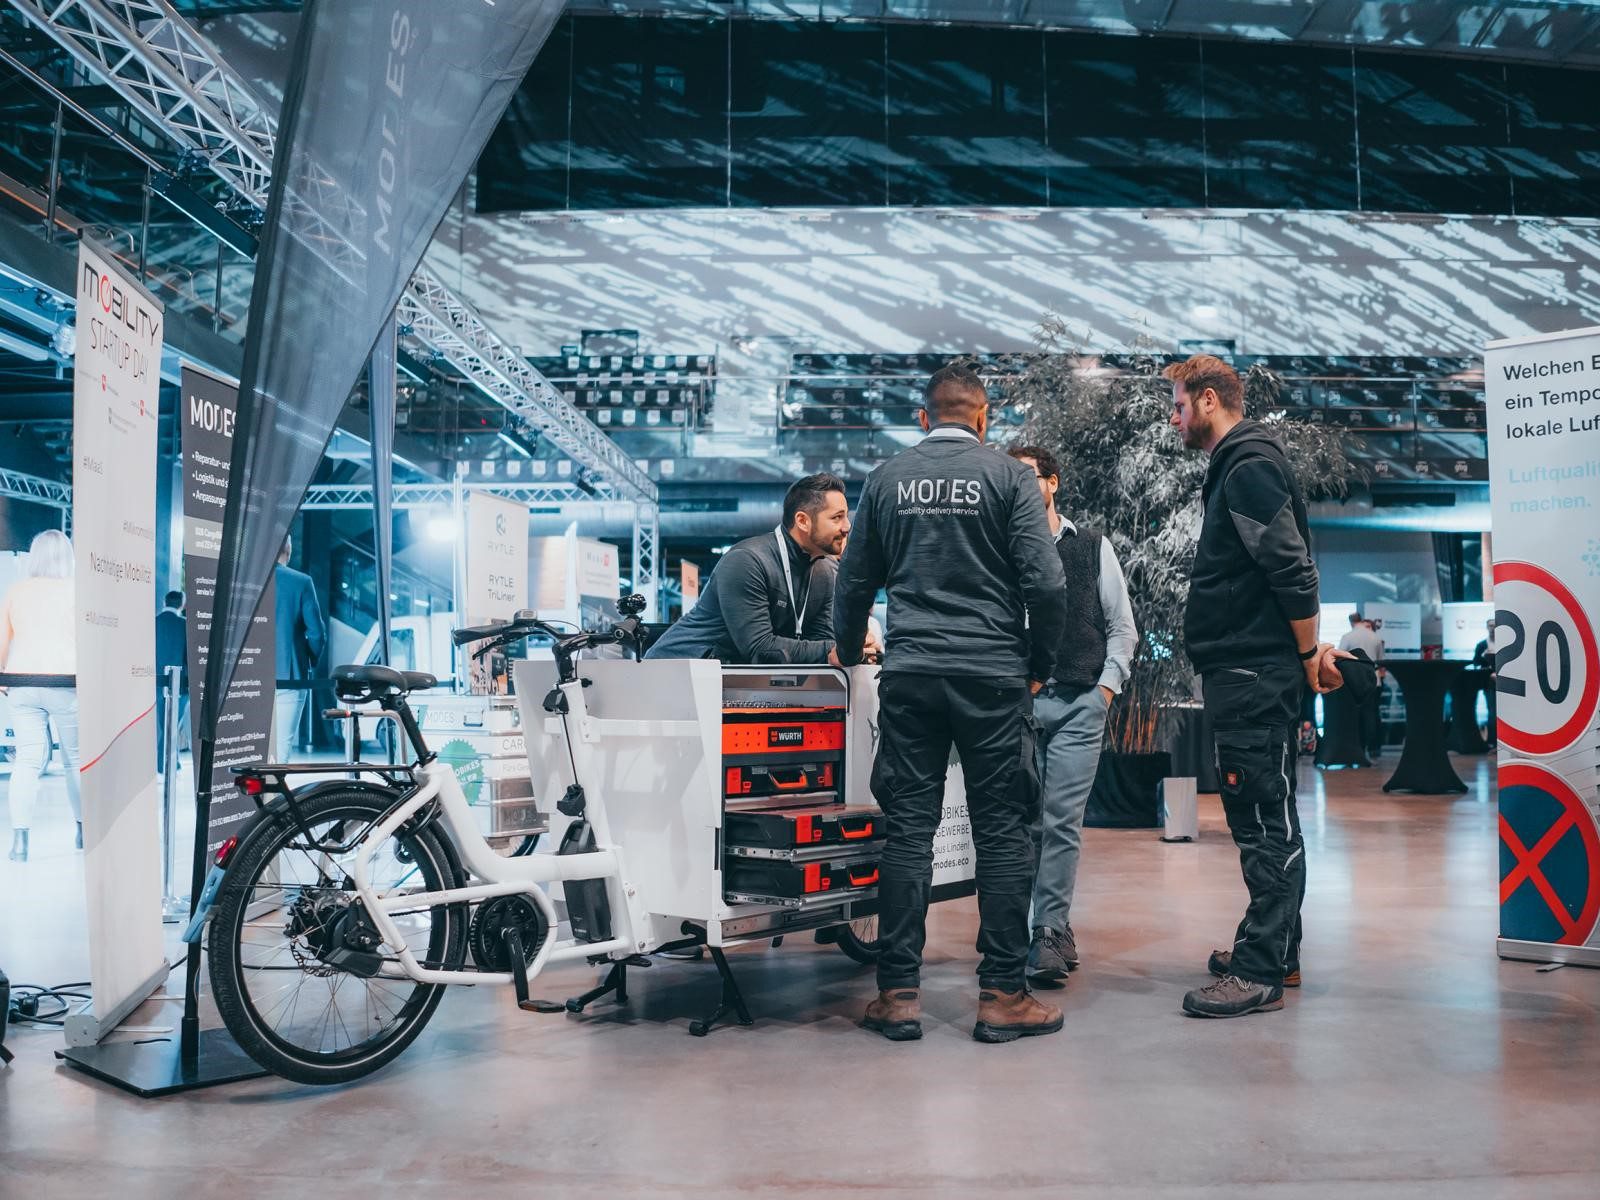 Fachgespräch am Stand vor einem E-Cargo Bike mit eingebautem Werkzeugkasten zur mobilen Wartung